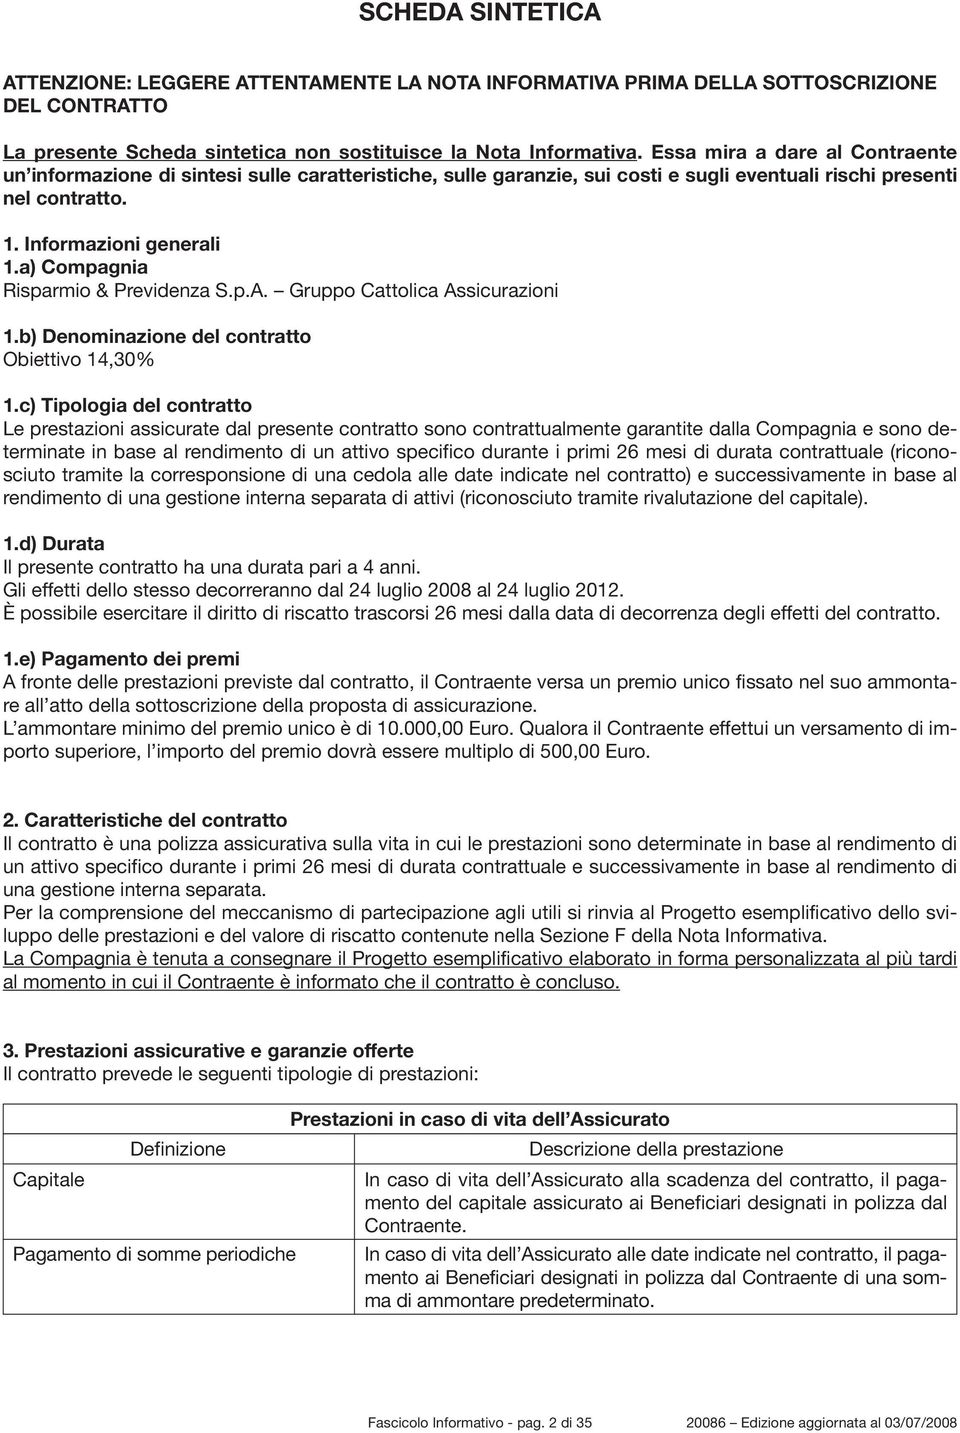 a) Compagnia Risparmio & Previdenza S.p.A. Gruppo Cattolica Assicurazioni 1.b) Denominazione del contratto Obiettivo 14,30% 1.